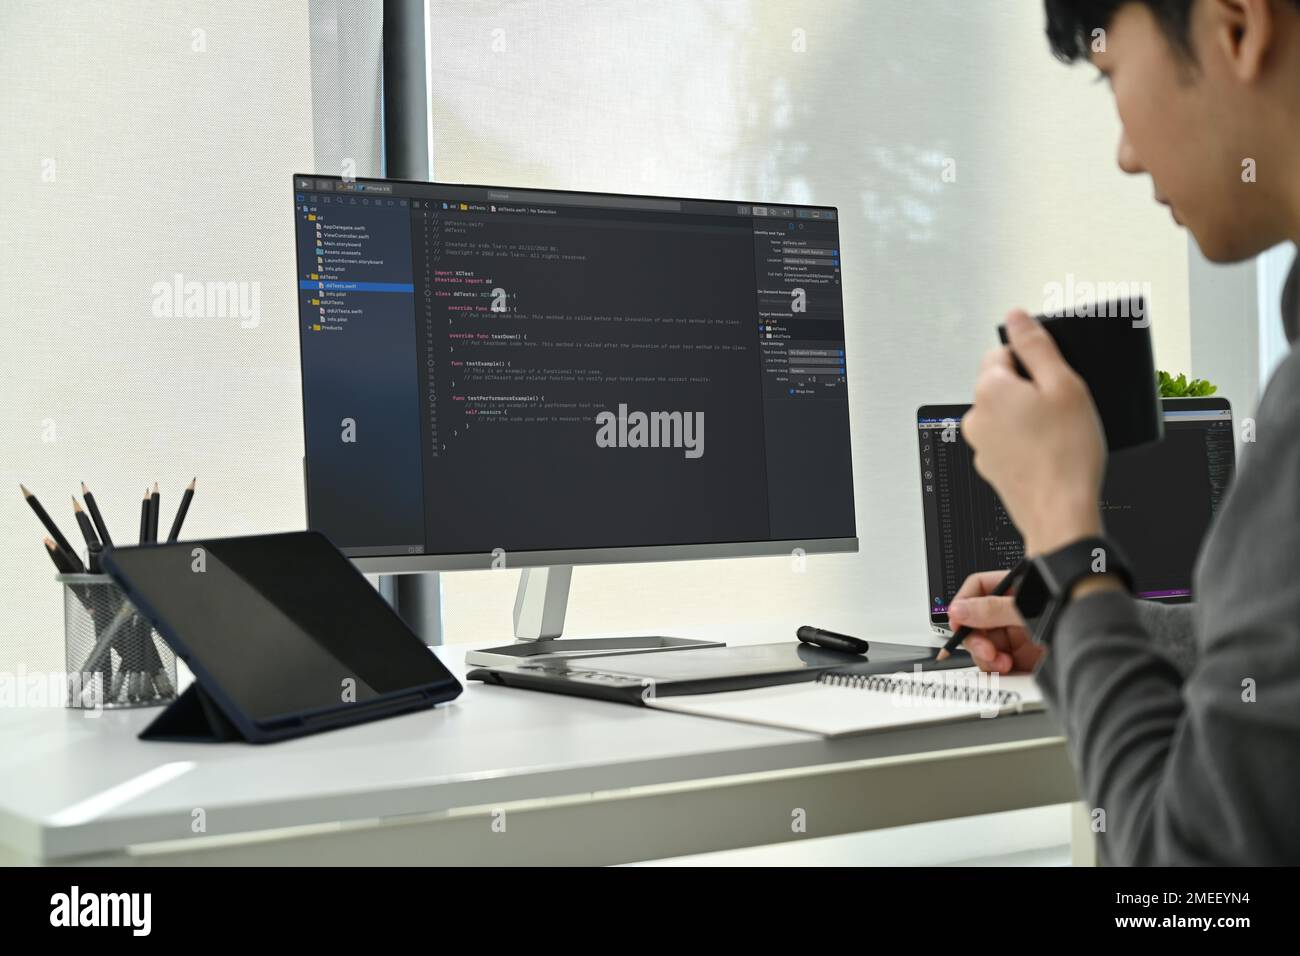 Immagine ritagliata di sviluppatori di software maschi che lavorano con dati codificati sullo schermo del computer in un ufficio moderno Foto Stock